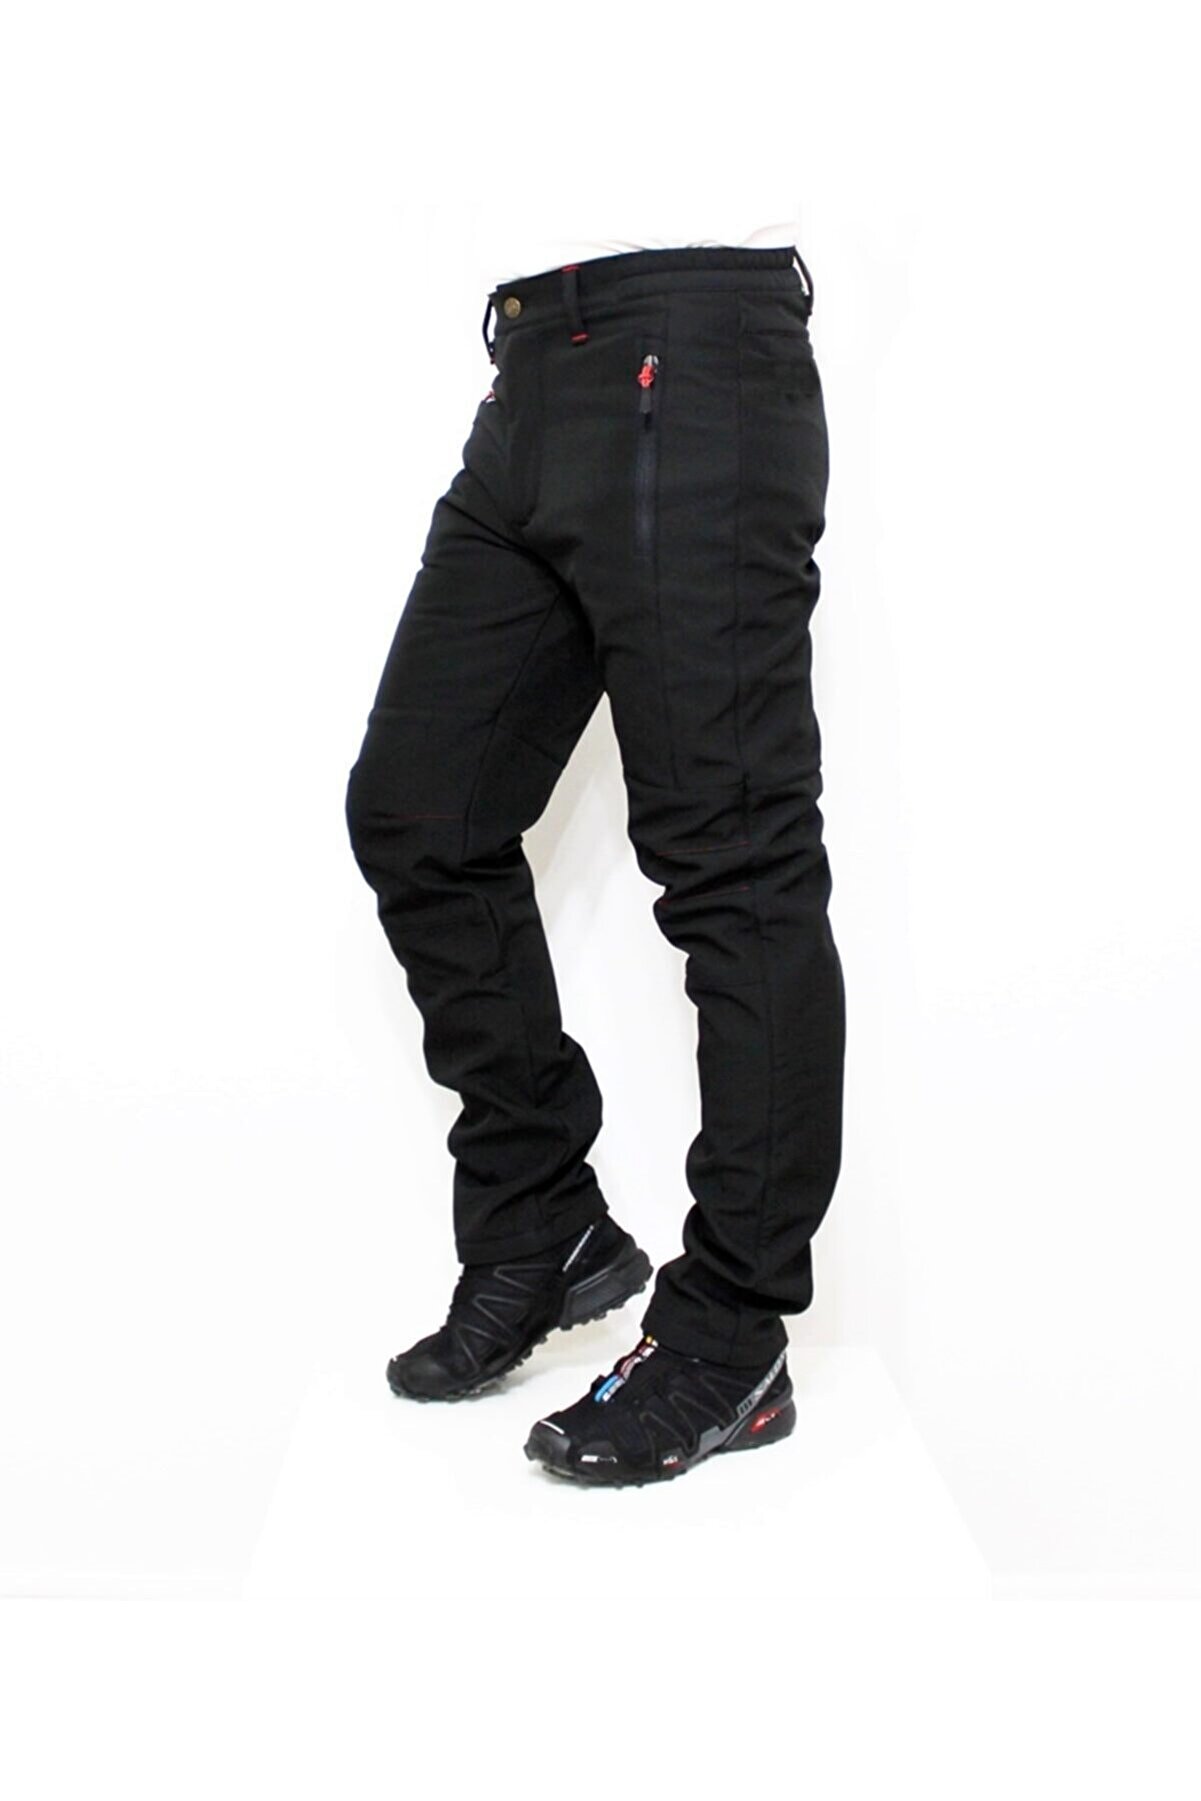 Ysf WorkWear İş Market Outdoor Kışlık Siyah Polarlı Softshell Unisex Motorcu Pantolonu